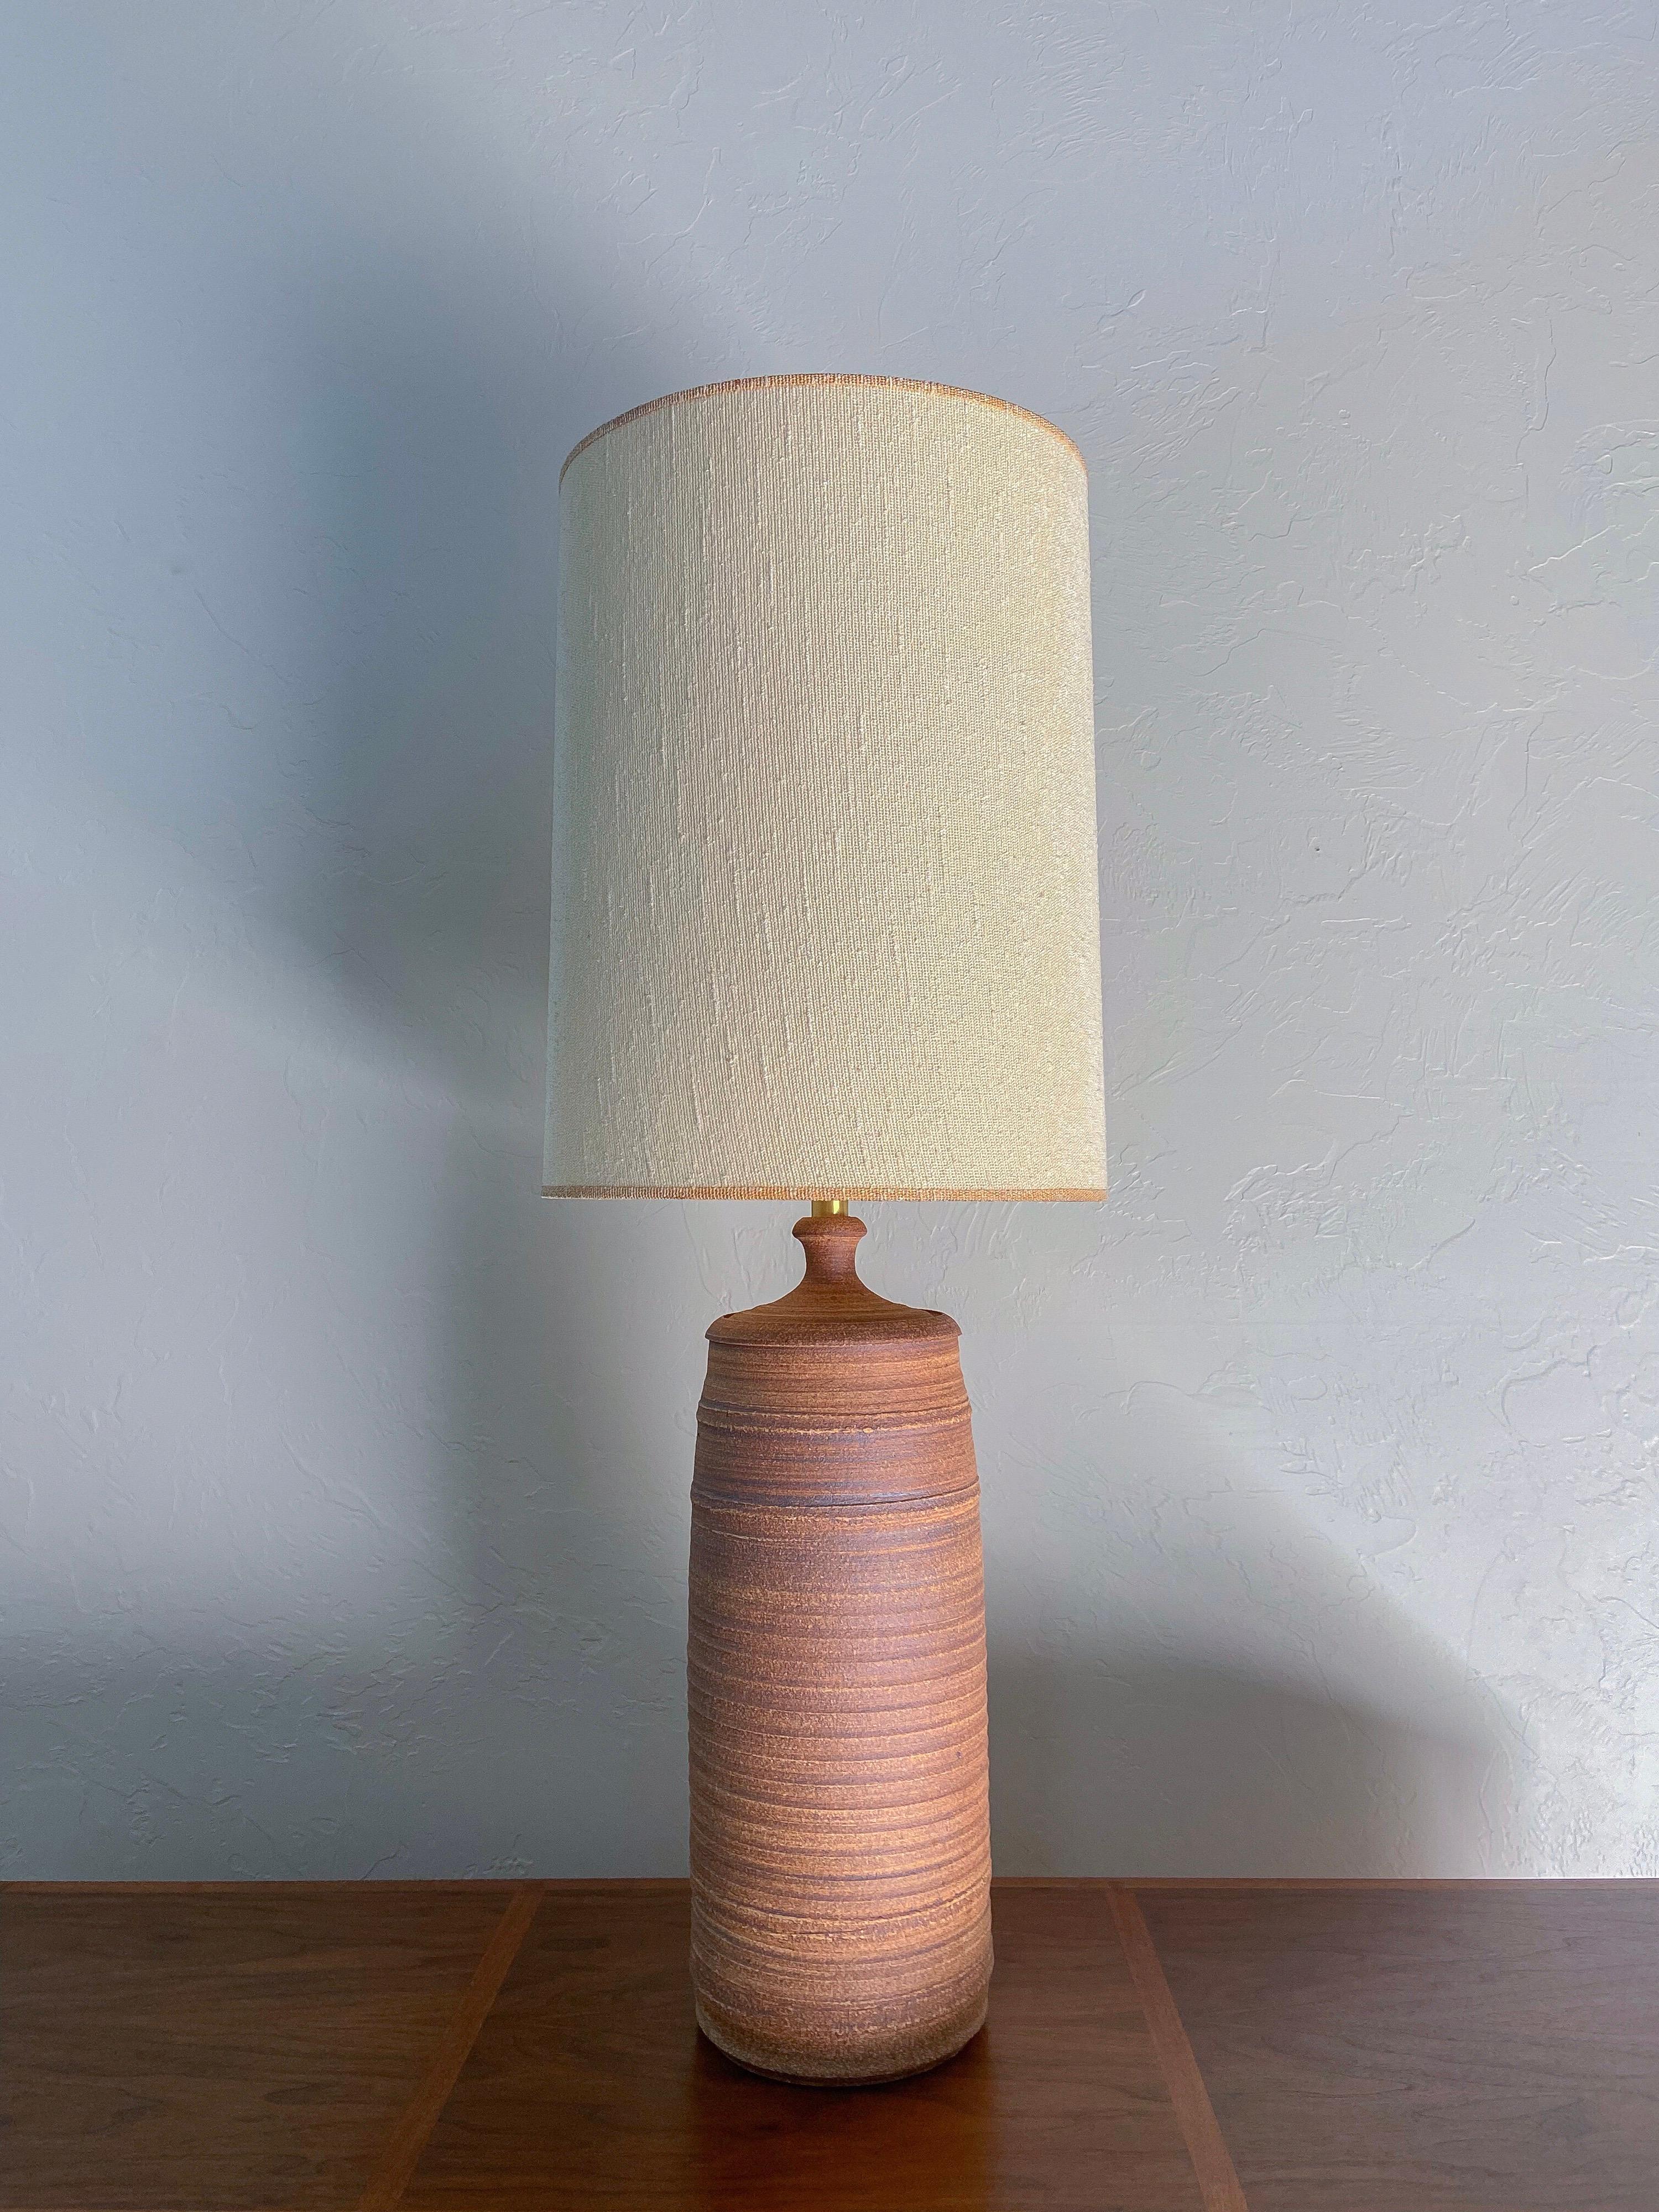 Eine großformatige, handgefertigte Steingutlampe von Phil Bartok für die Firma Affiliated Craftsmen Studios. 

Wunderschöne Erdtöne und Texturen verleihen dieser Lampe eine Vielzahl von passenden Stilen. 

Bartok war zusammen mit Bob Kinzie